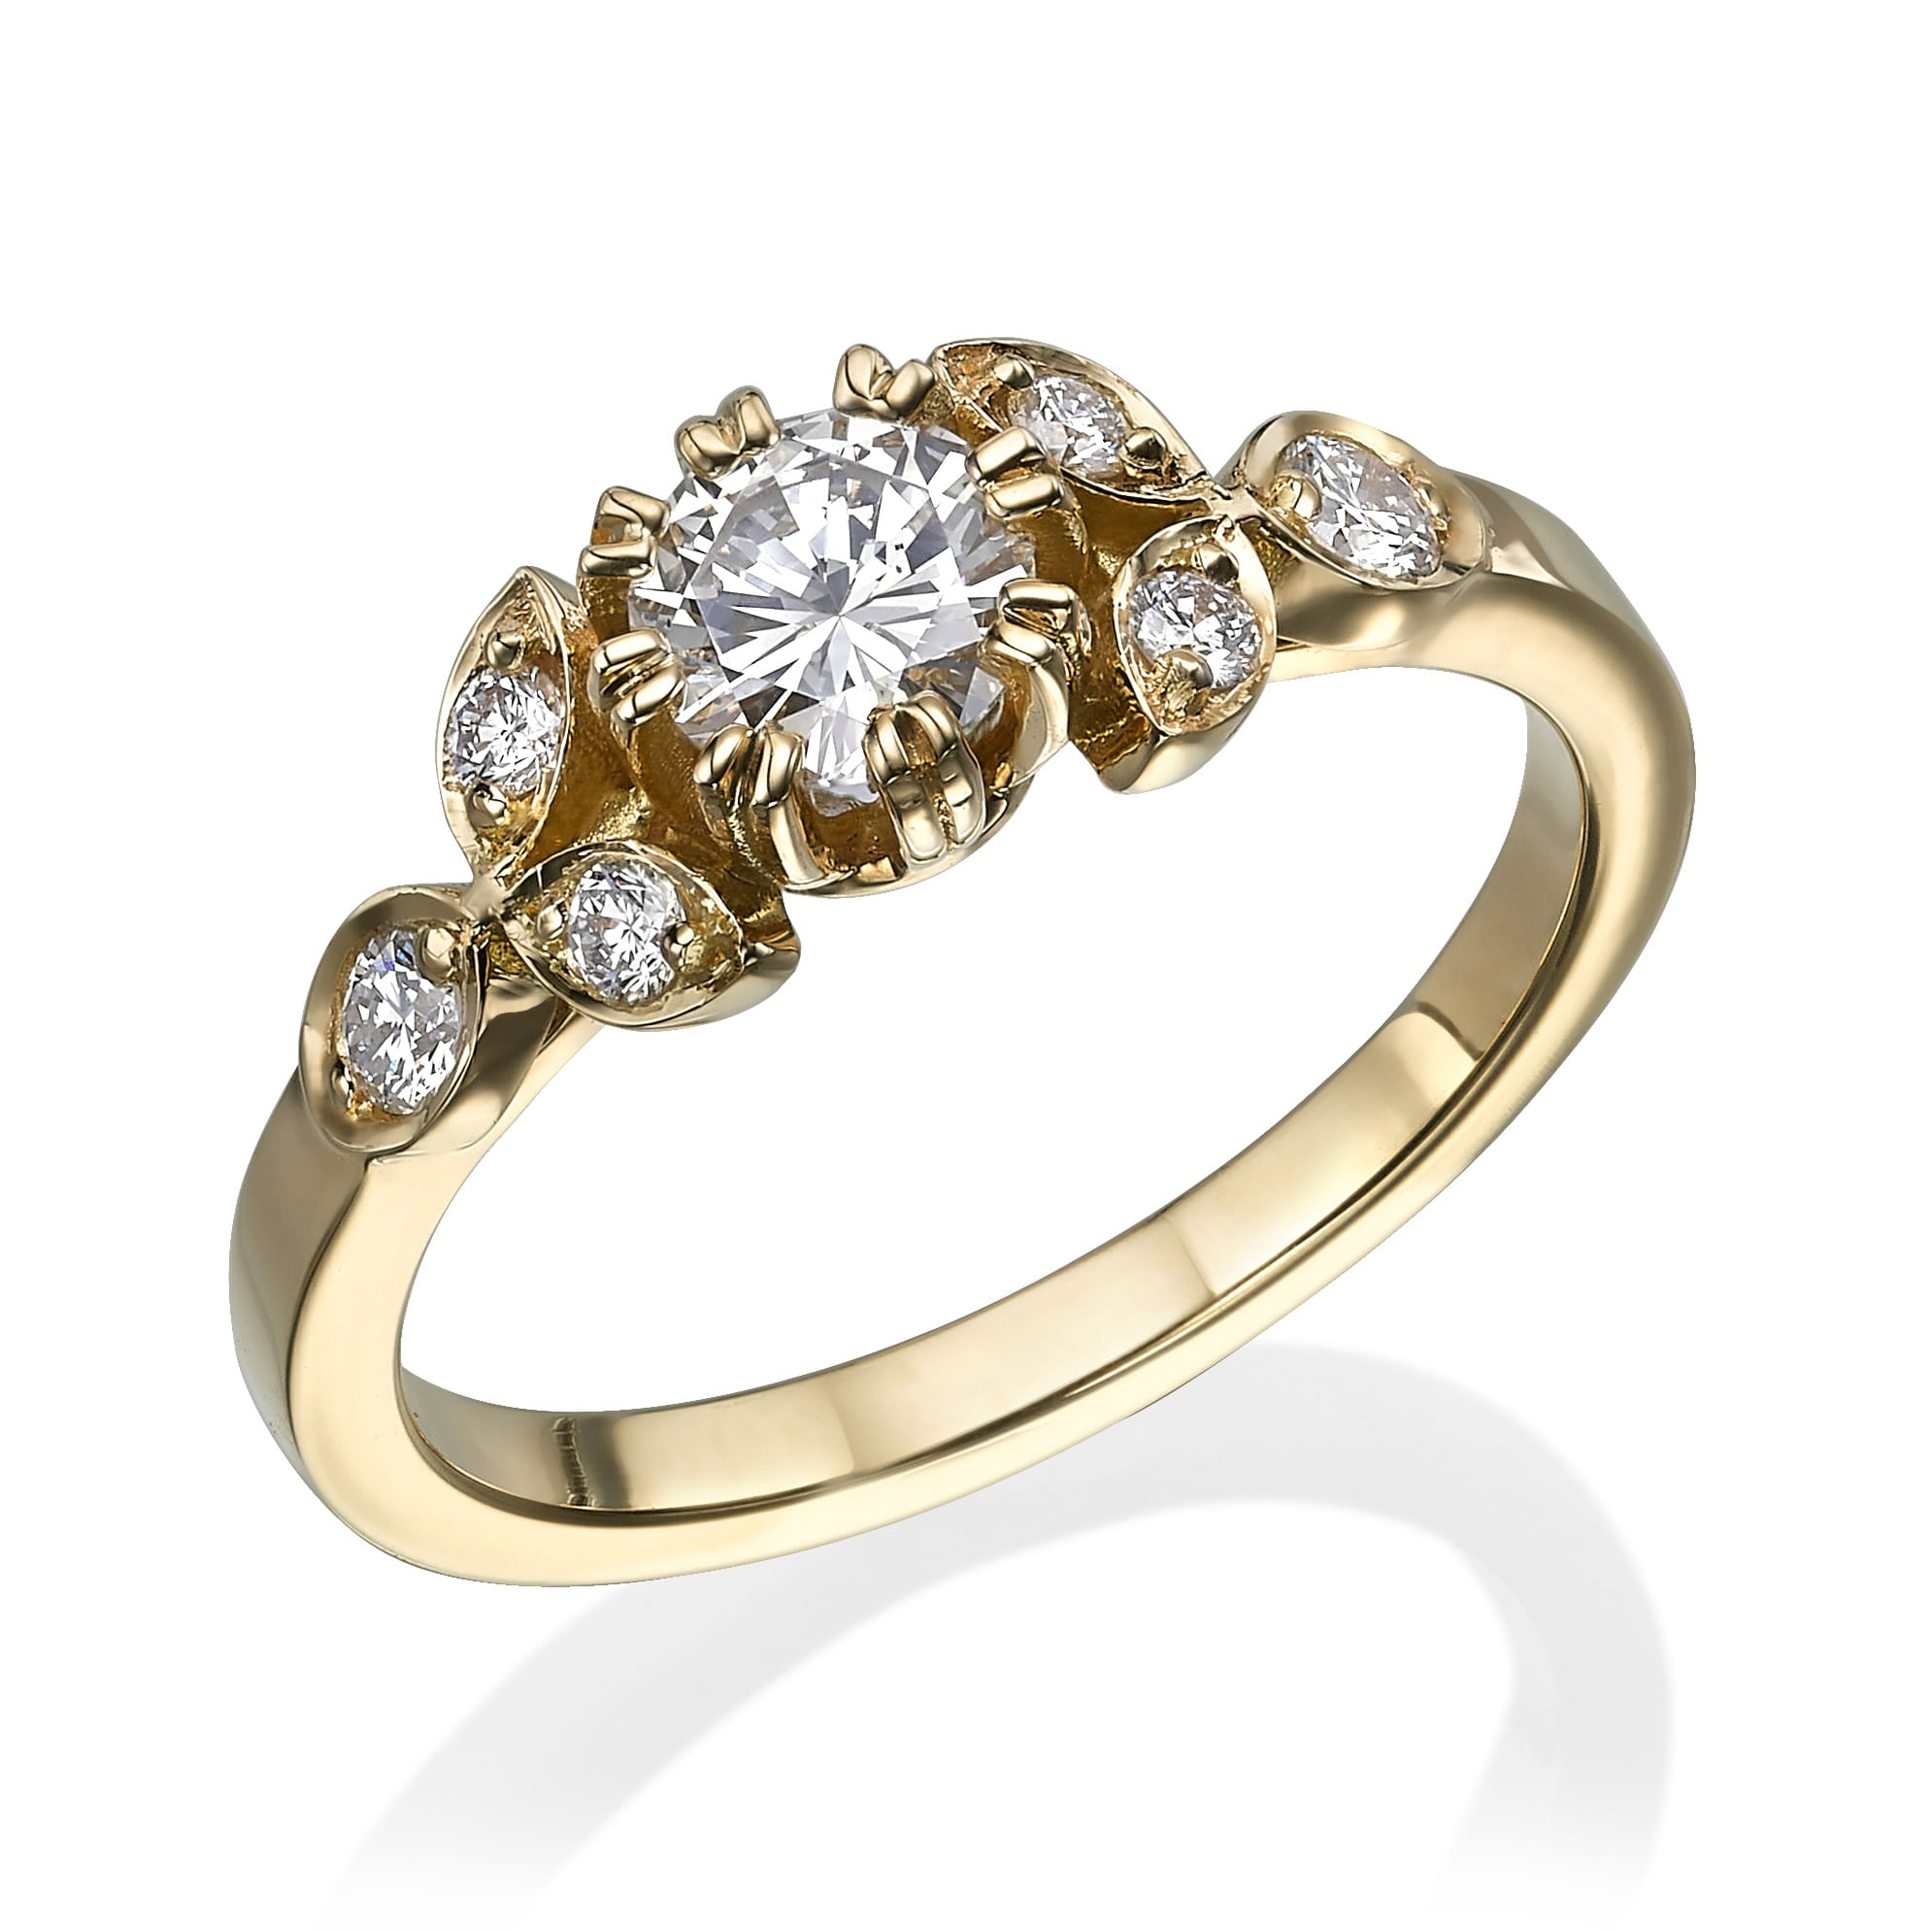 טבעת אירוסין זהב דגם לינוי מעוטרת ביהלום מרכזי בחיתוך עגול ומוקפת במרקיזה קטנה יותר ויהלומים בחיתוך עגול, מציגה עיצוב יוקרתי.